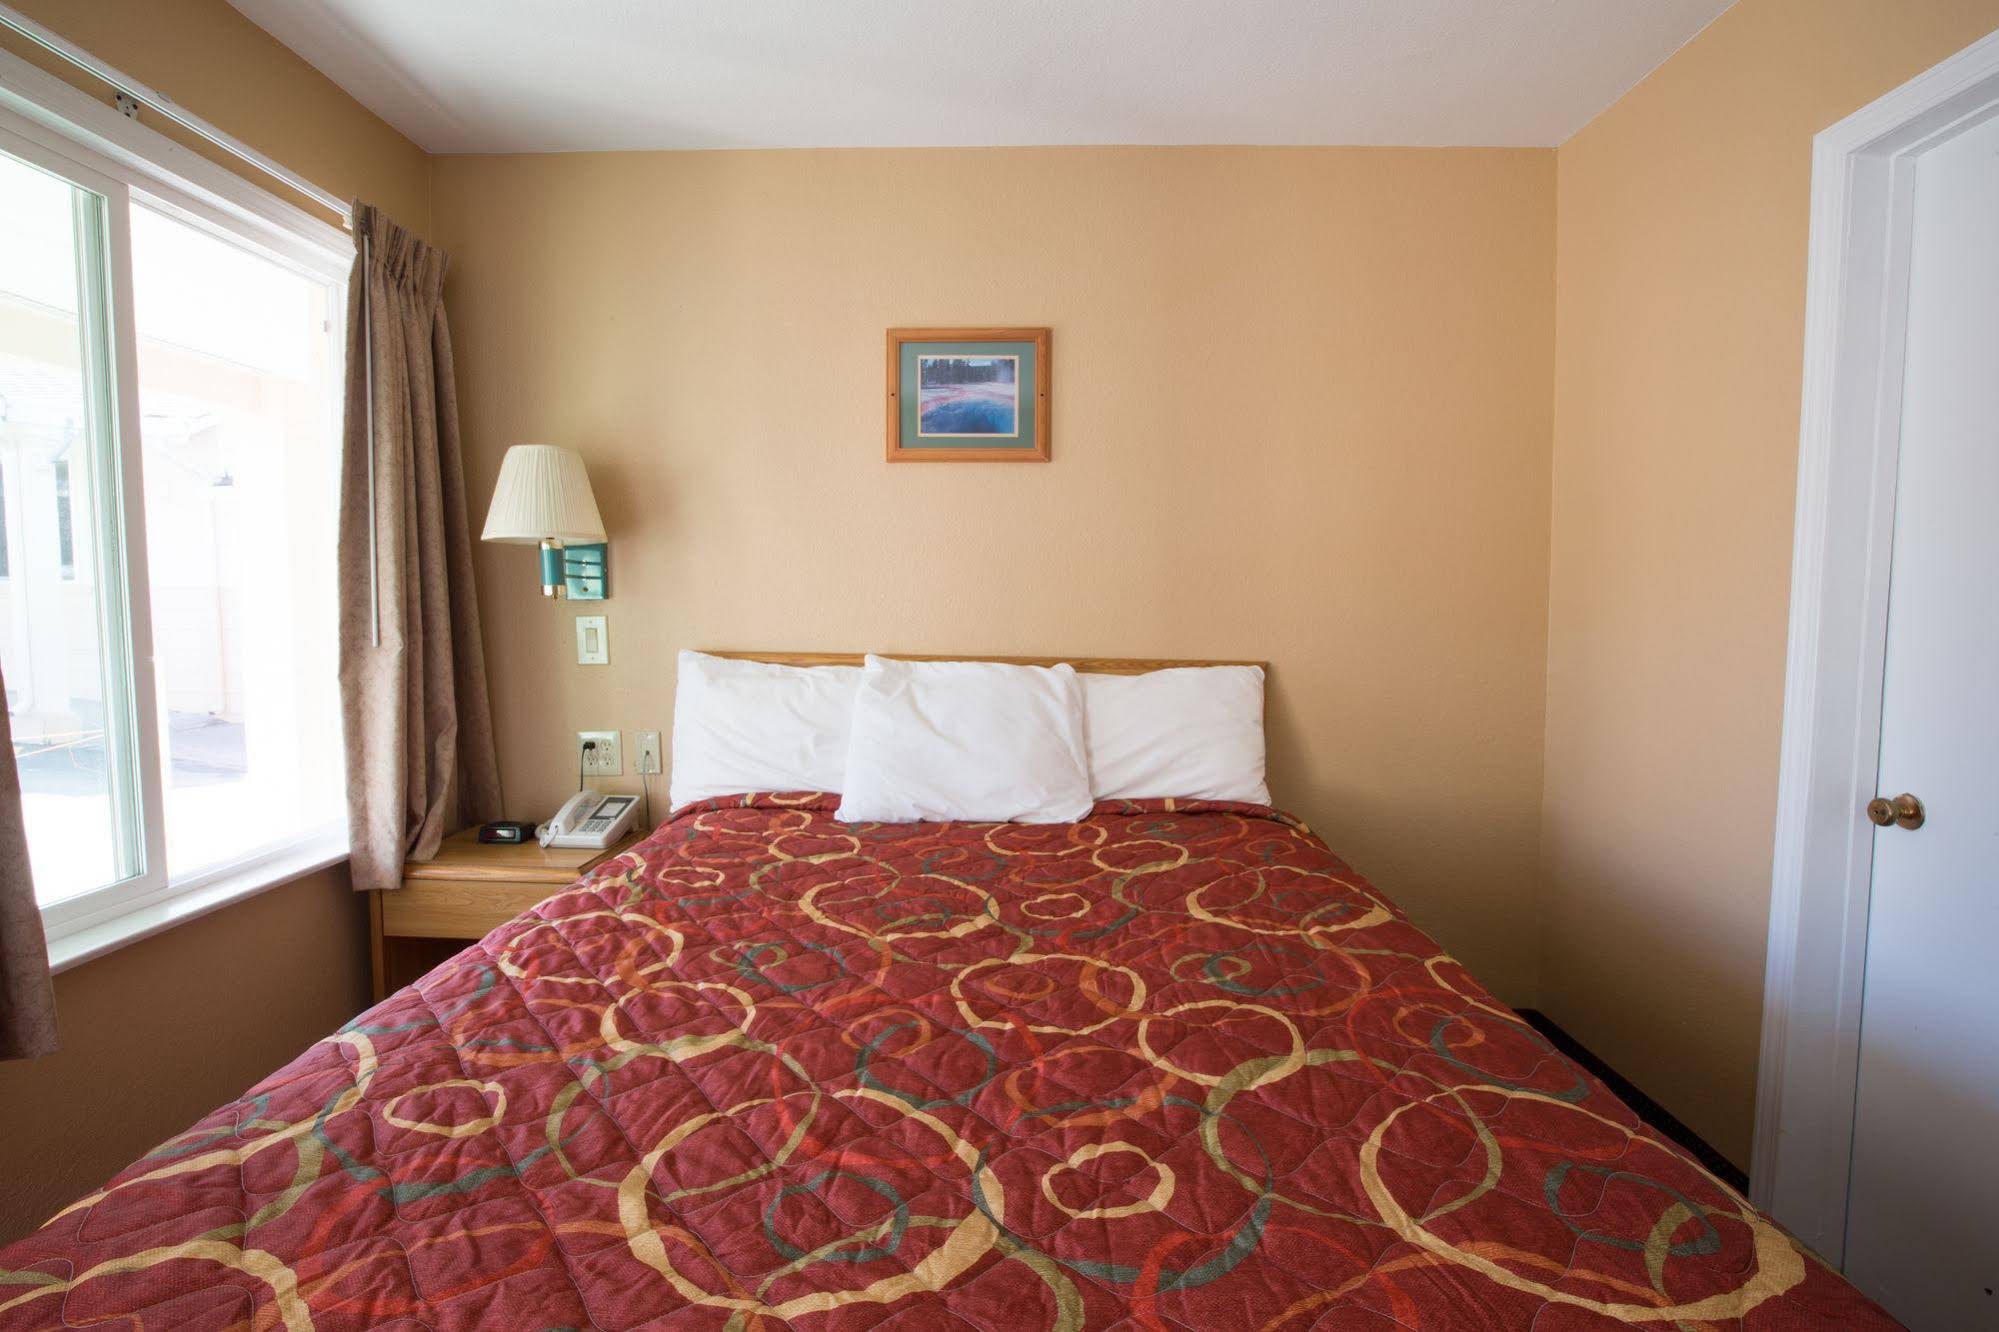 Shasta Pines Motel & Suites